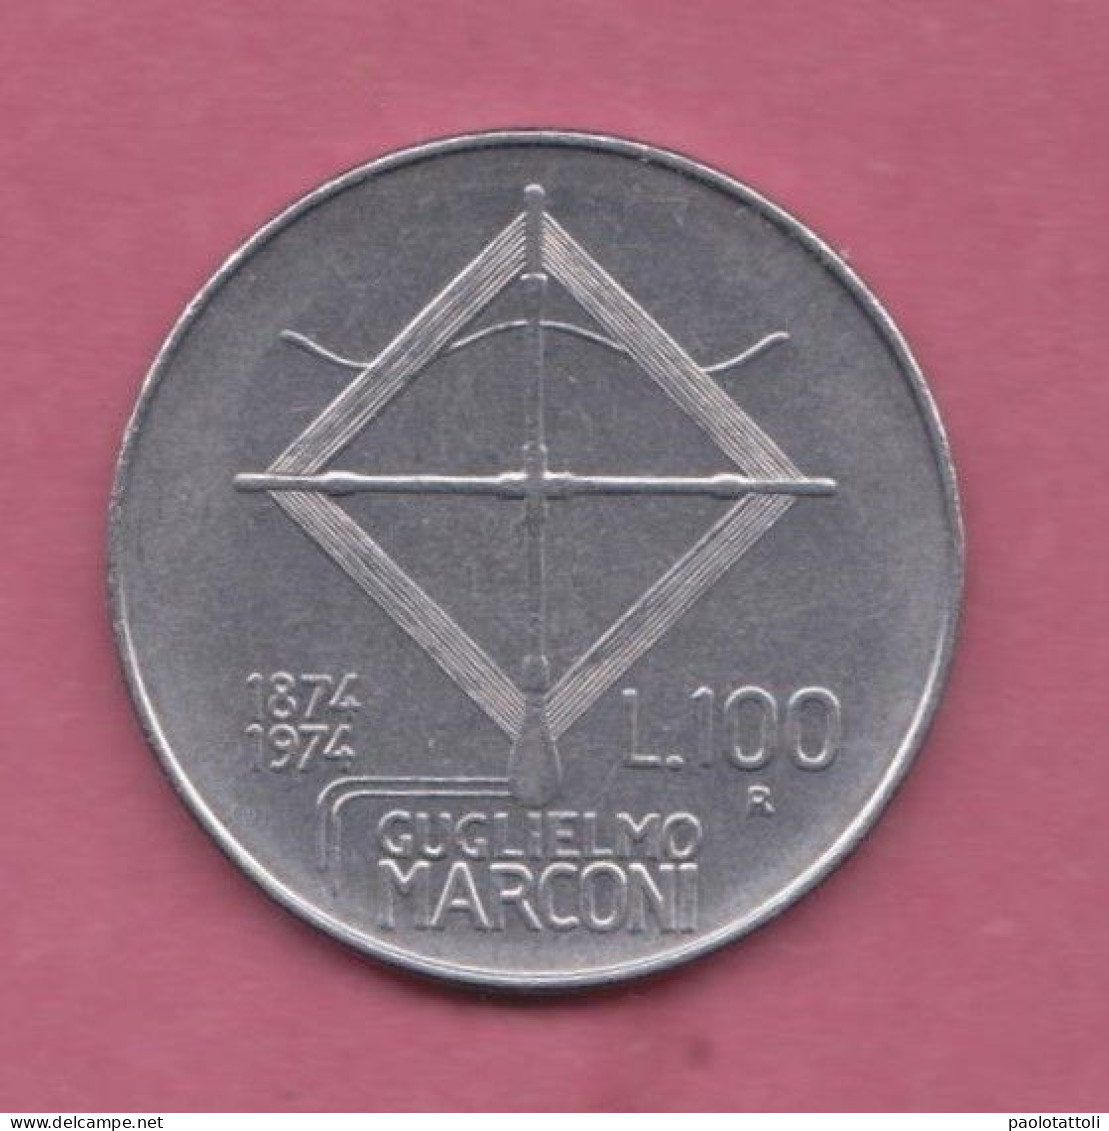 Italia, 1974- 100 Lire - Circulating Commemorative Coin- Acmonital- Obverse Facing Head Of Guglielmo Marconi. - 100 Lire